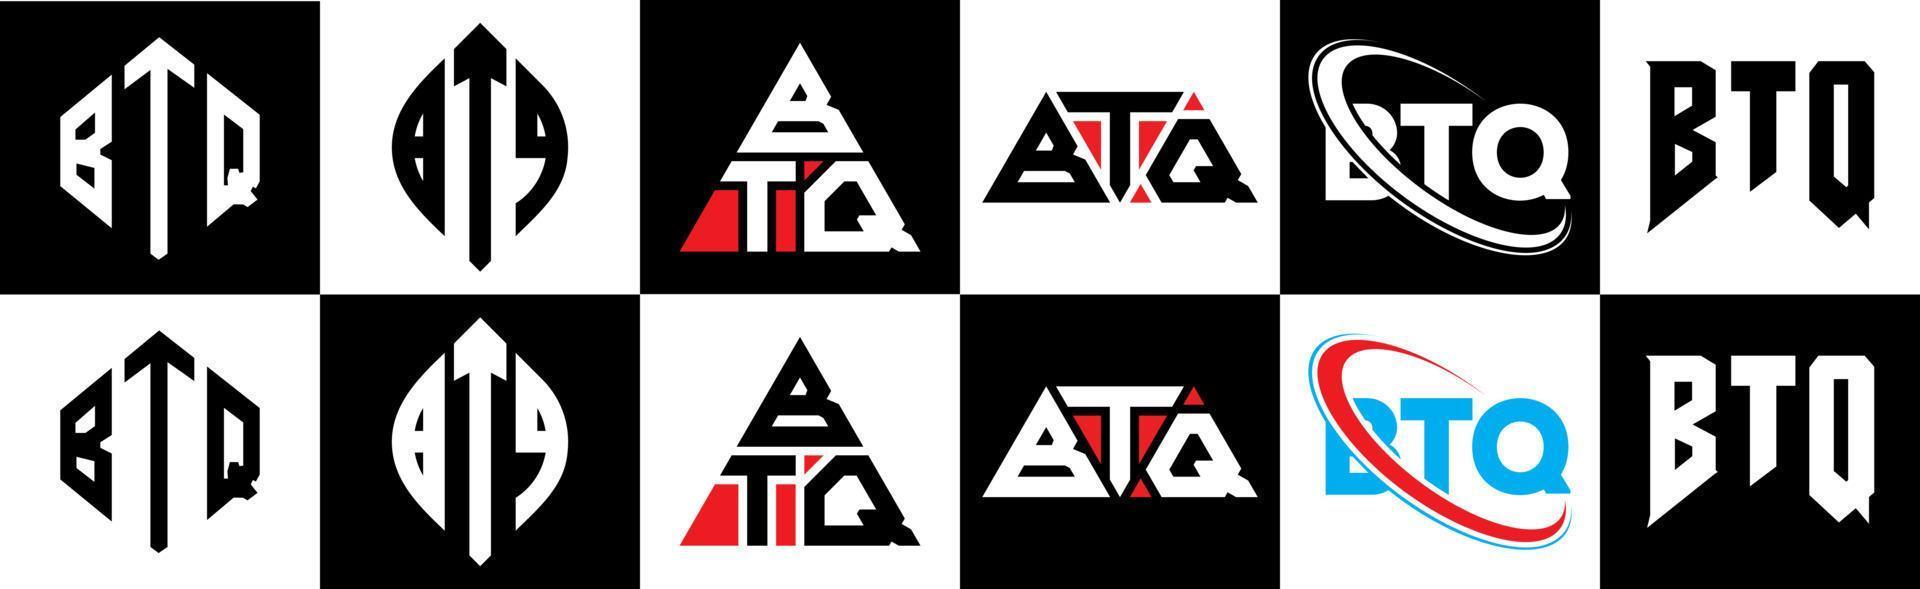 création de logo de lettre btq en six styles. polygone btq, cercle, triangle, hexagone, style plat et simple avec logo de lettre de variation de couleur noir et blanc dans un plan de travail. logo btq minimaliste et classique vecteur